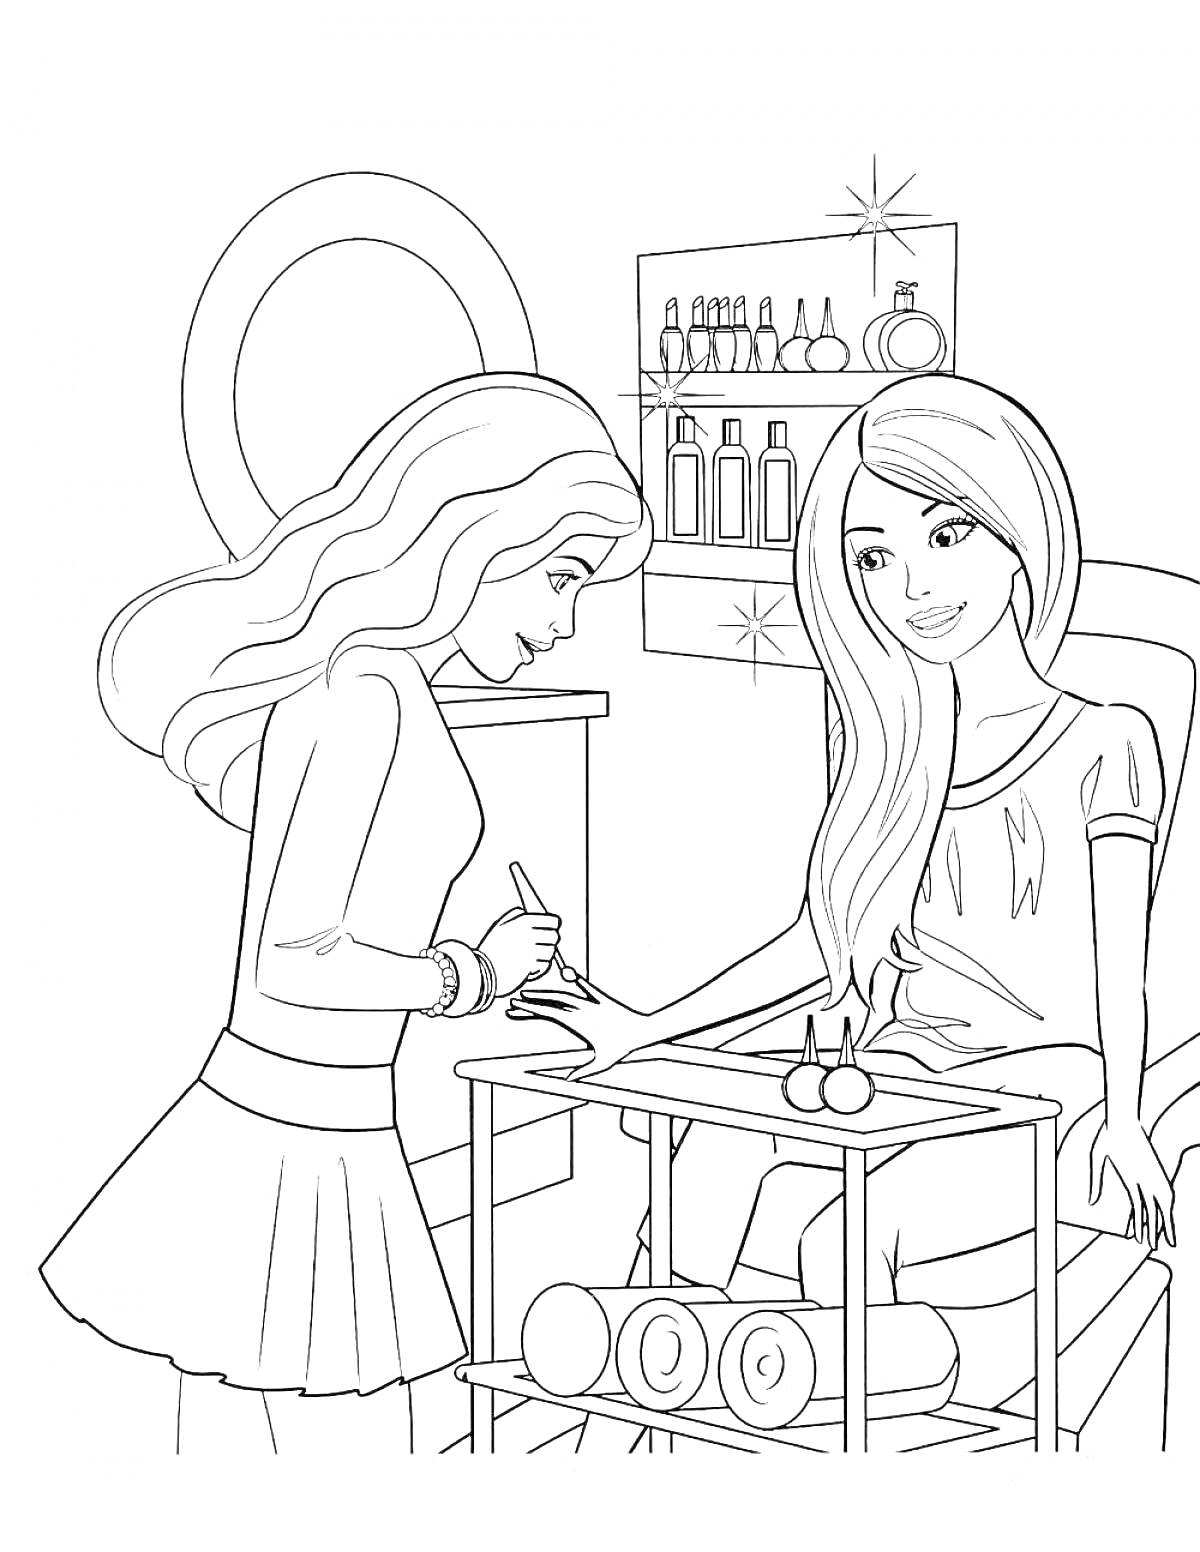 Барби в салоне красоты - две девушки, маникюр, полки с косметикой, столик с маникюрными принадлежностями